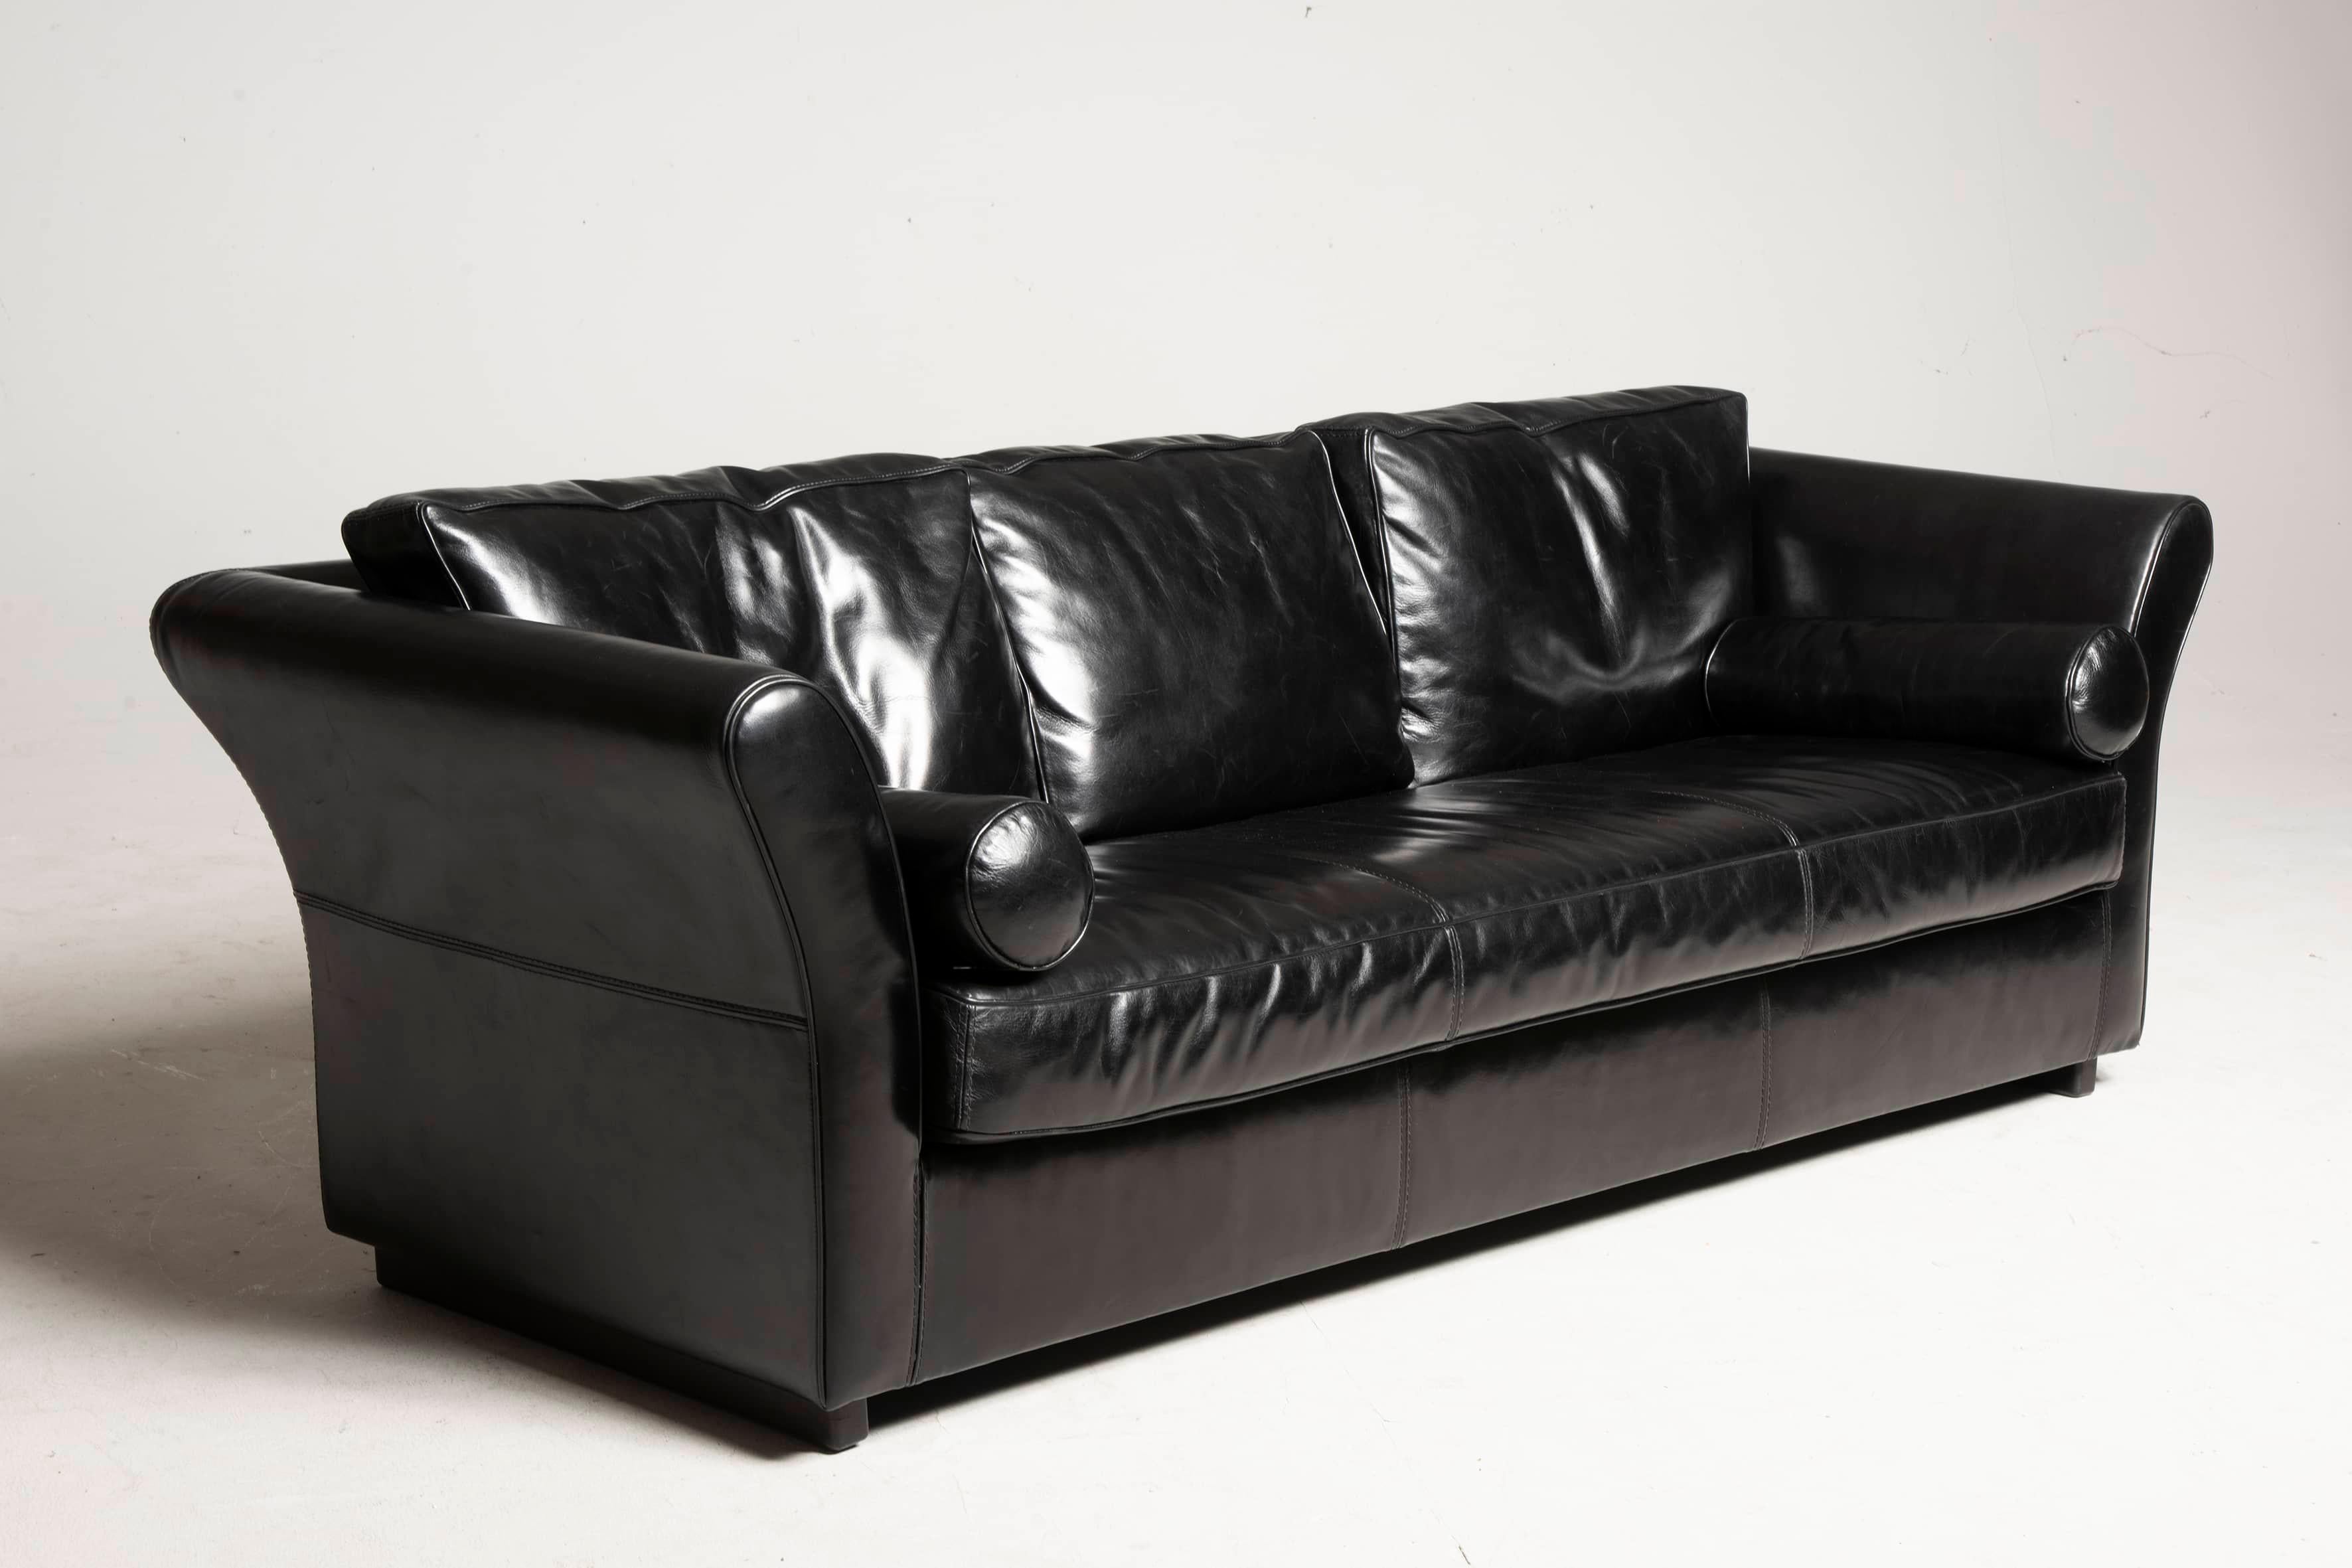 Baxter Sofa 2000s verwendet, aber in einwandfreiem Zustand (keine Schnitte oder Risse im Leder) Modell Diner. Das Sofa ist aus glänzendem schwarzem Leder. Die beiden Kissen sind im Preis inbegriffen. Er begrüßt Dreisitzer. Größe 230 cm x 97 cm, H 68